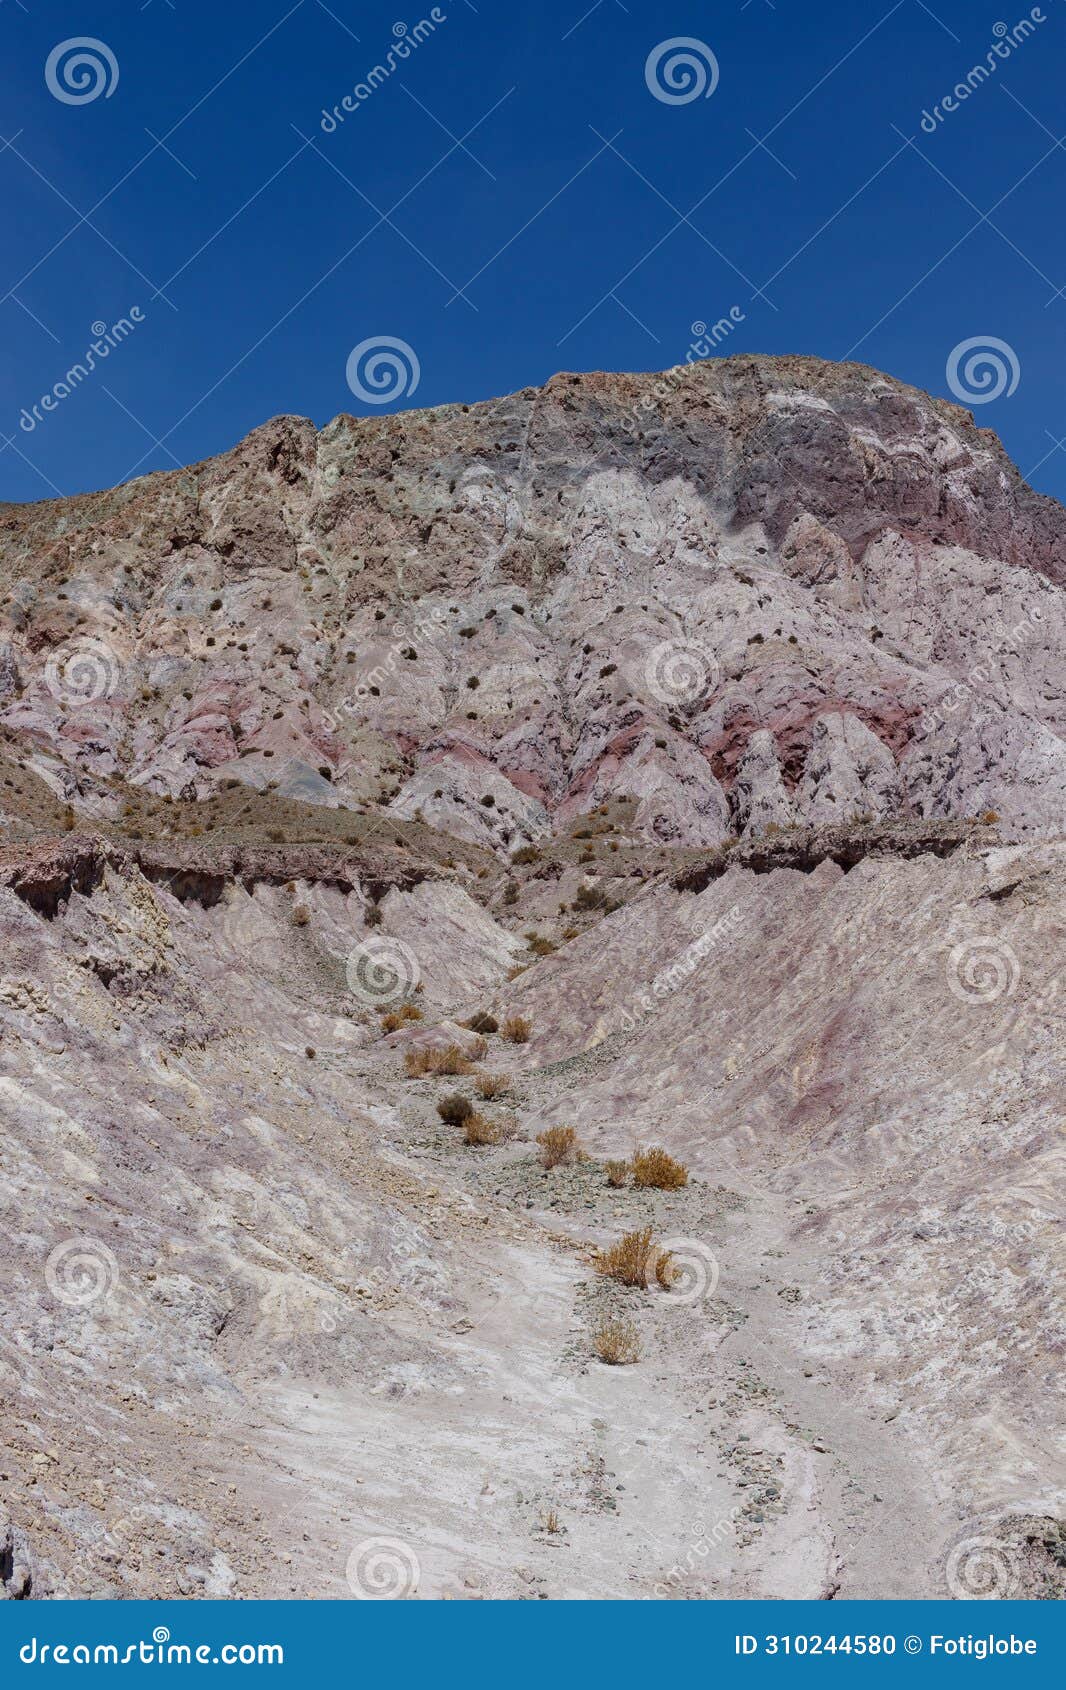 the mountains of the arco iris valley in the san pedro de atacama desert in chile